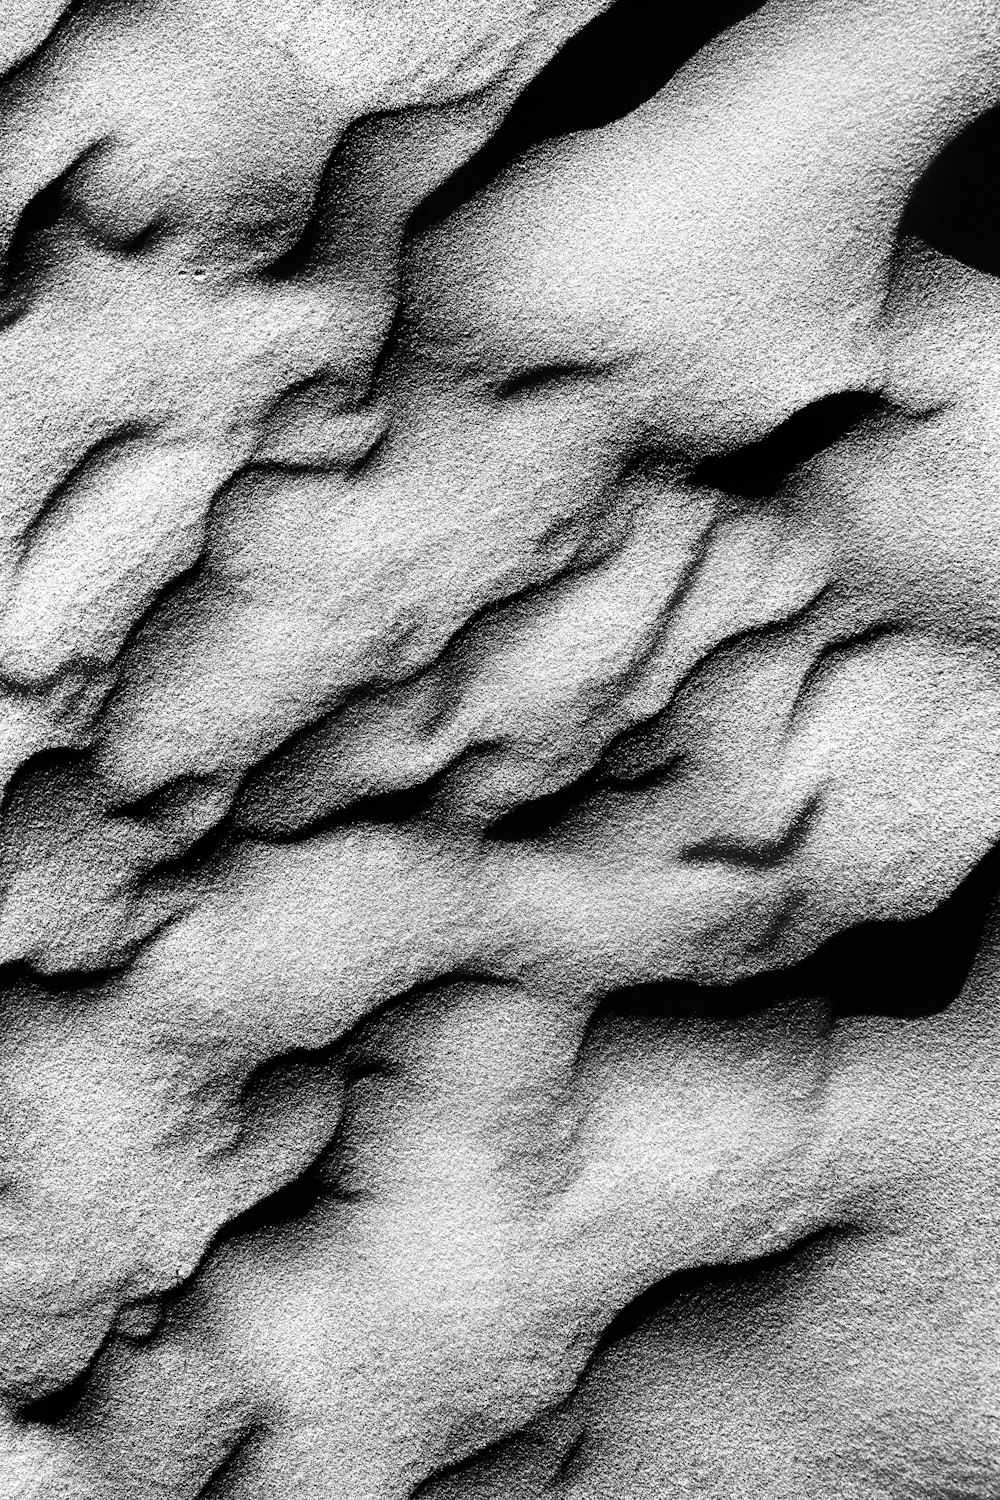 Una foto en blanco y negro de una formación rocosa